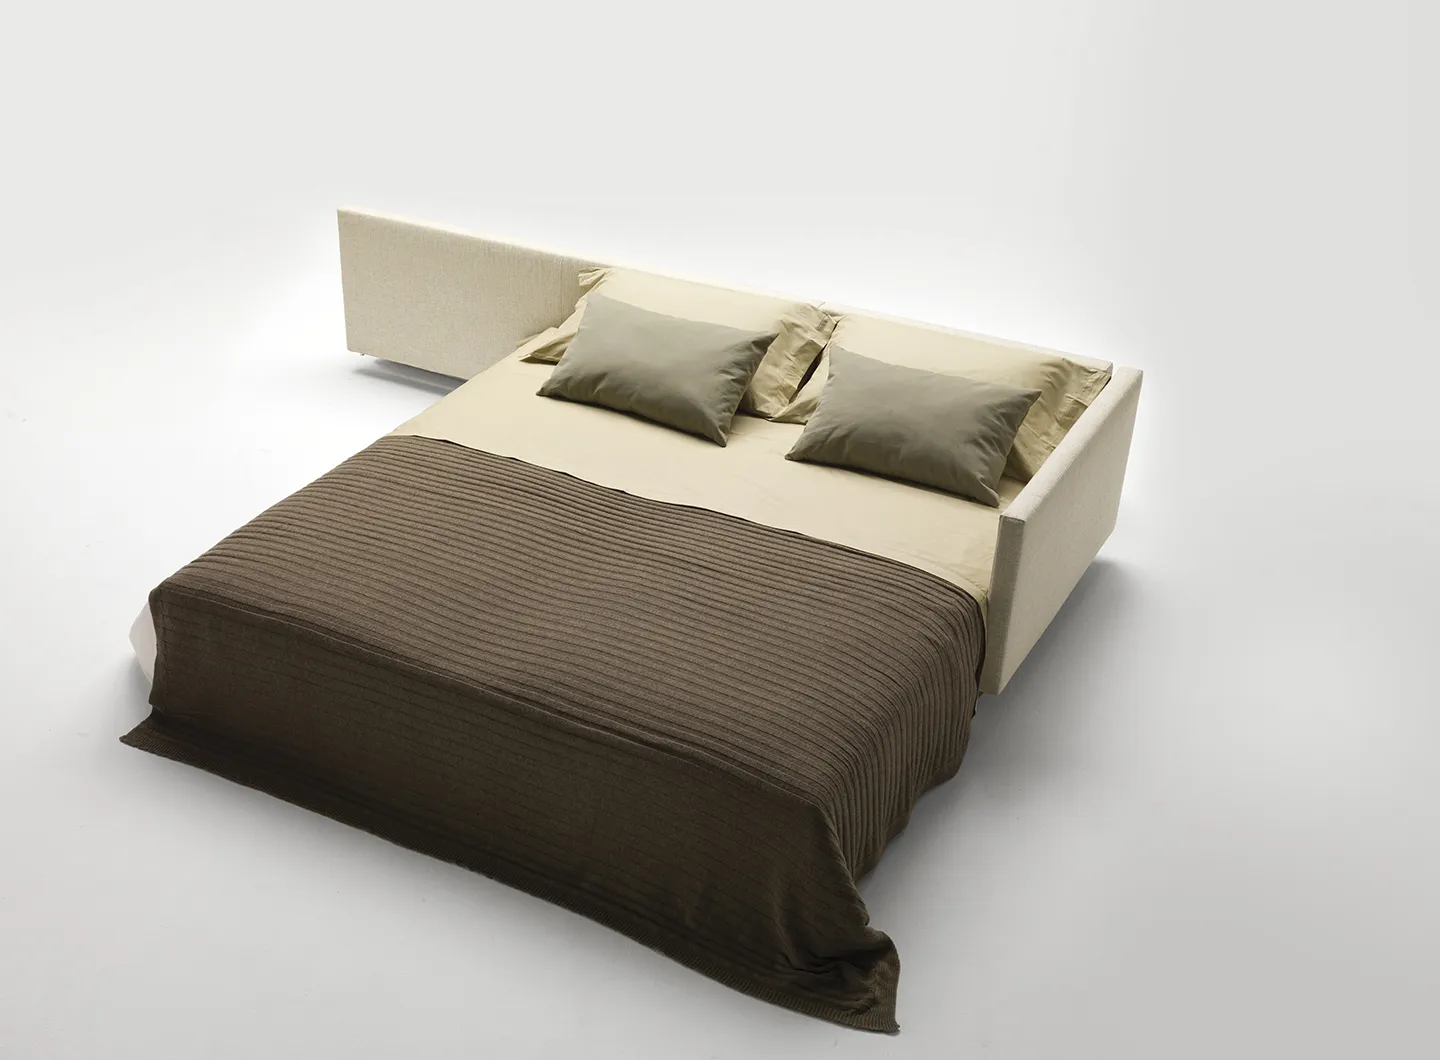 Milano Bedding - DENNIS modular sofa and sofa bed